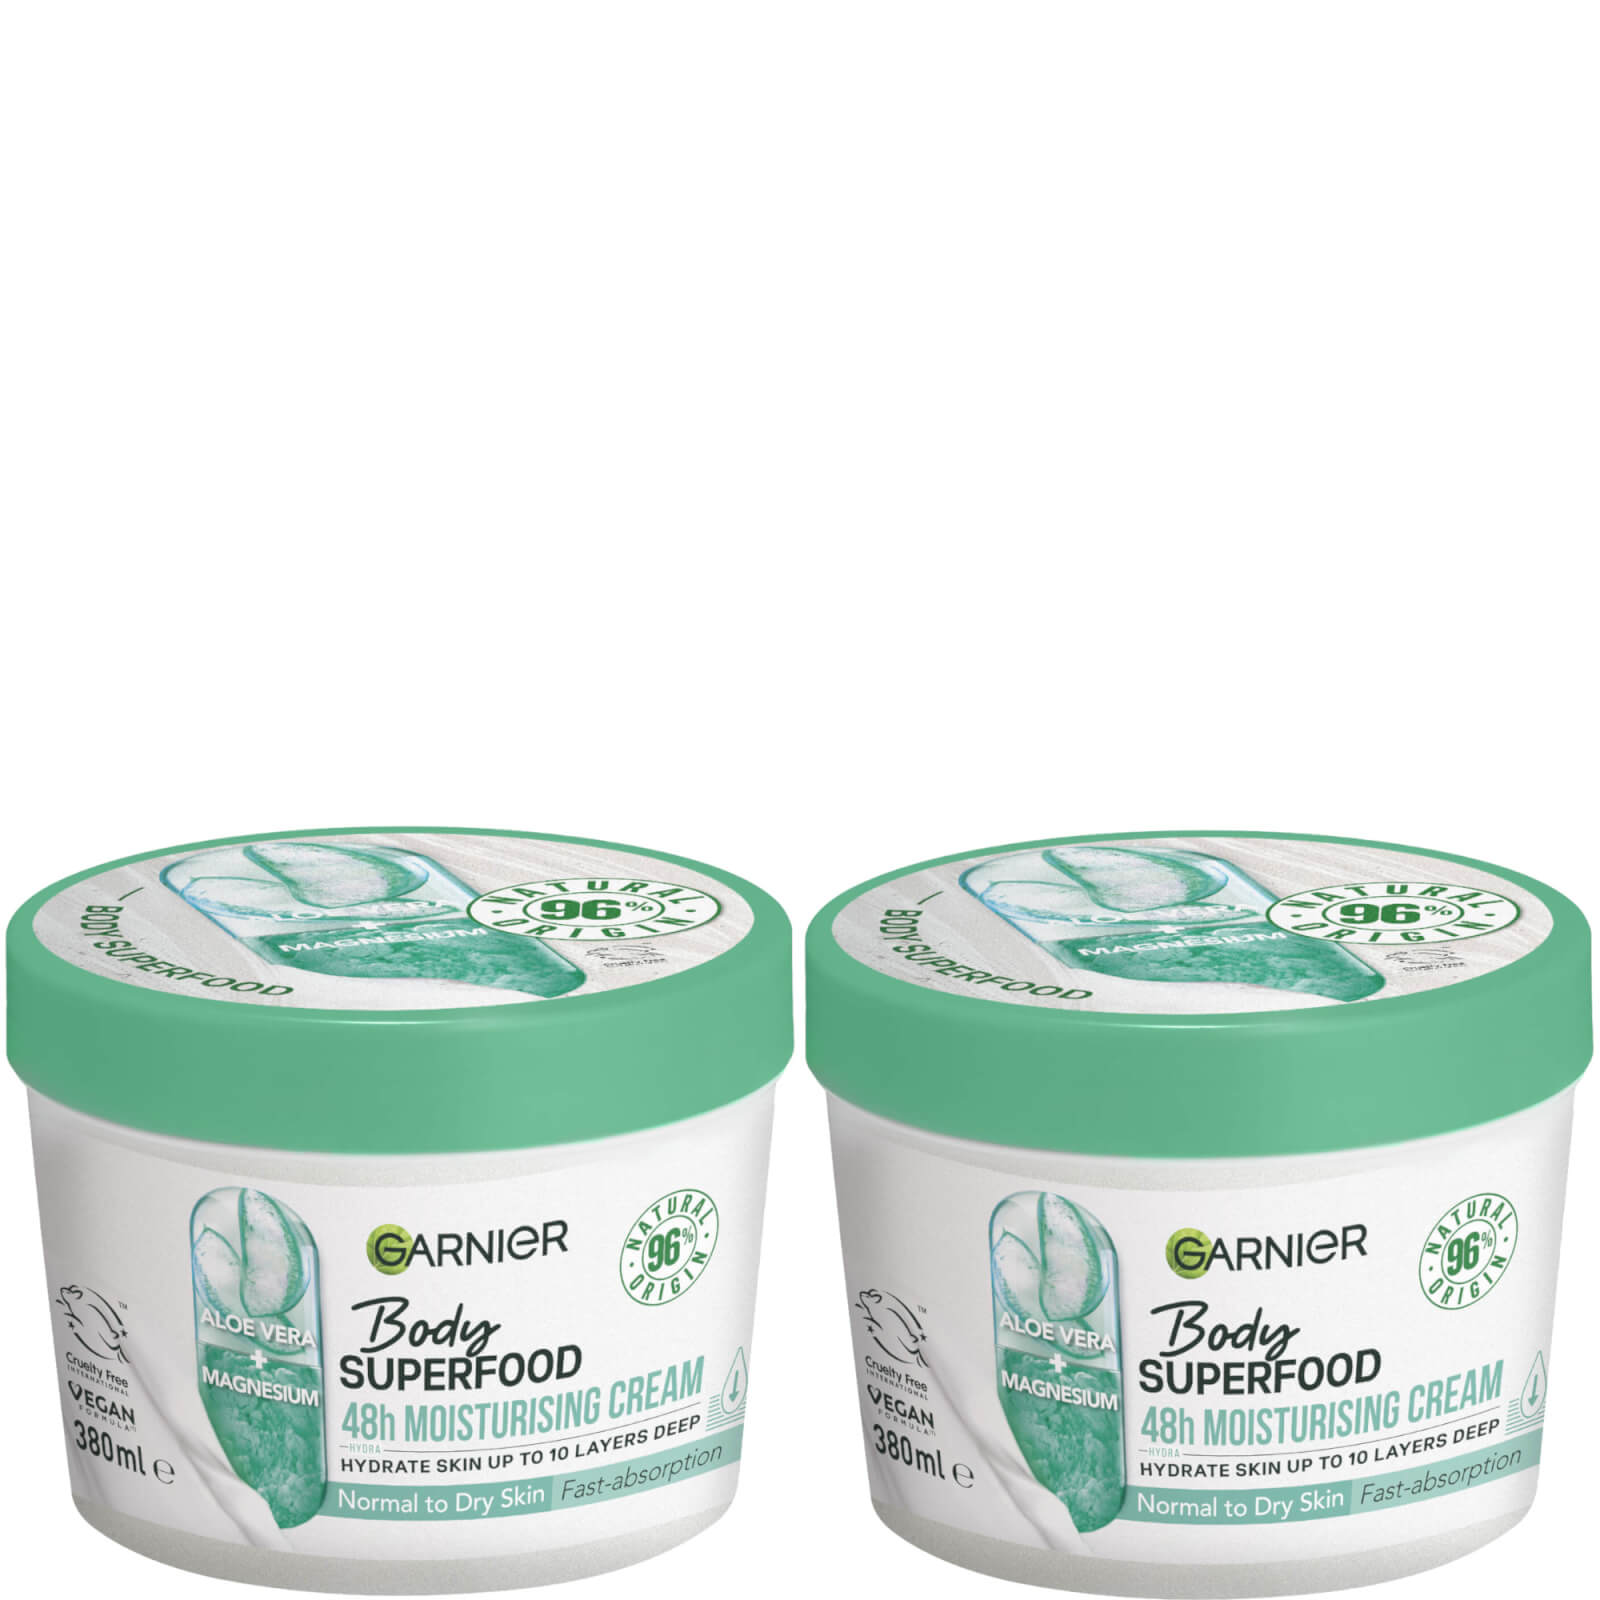 Garnier Body Superfood, Nourishing Body Cream Duos - Aloe Vera & Magnesium